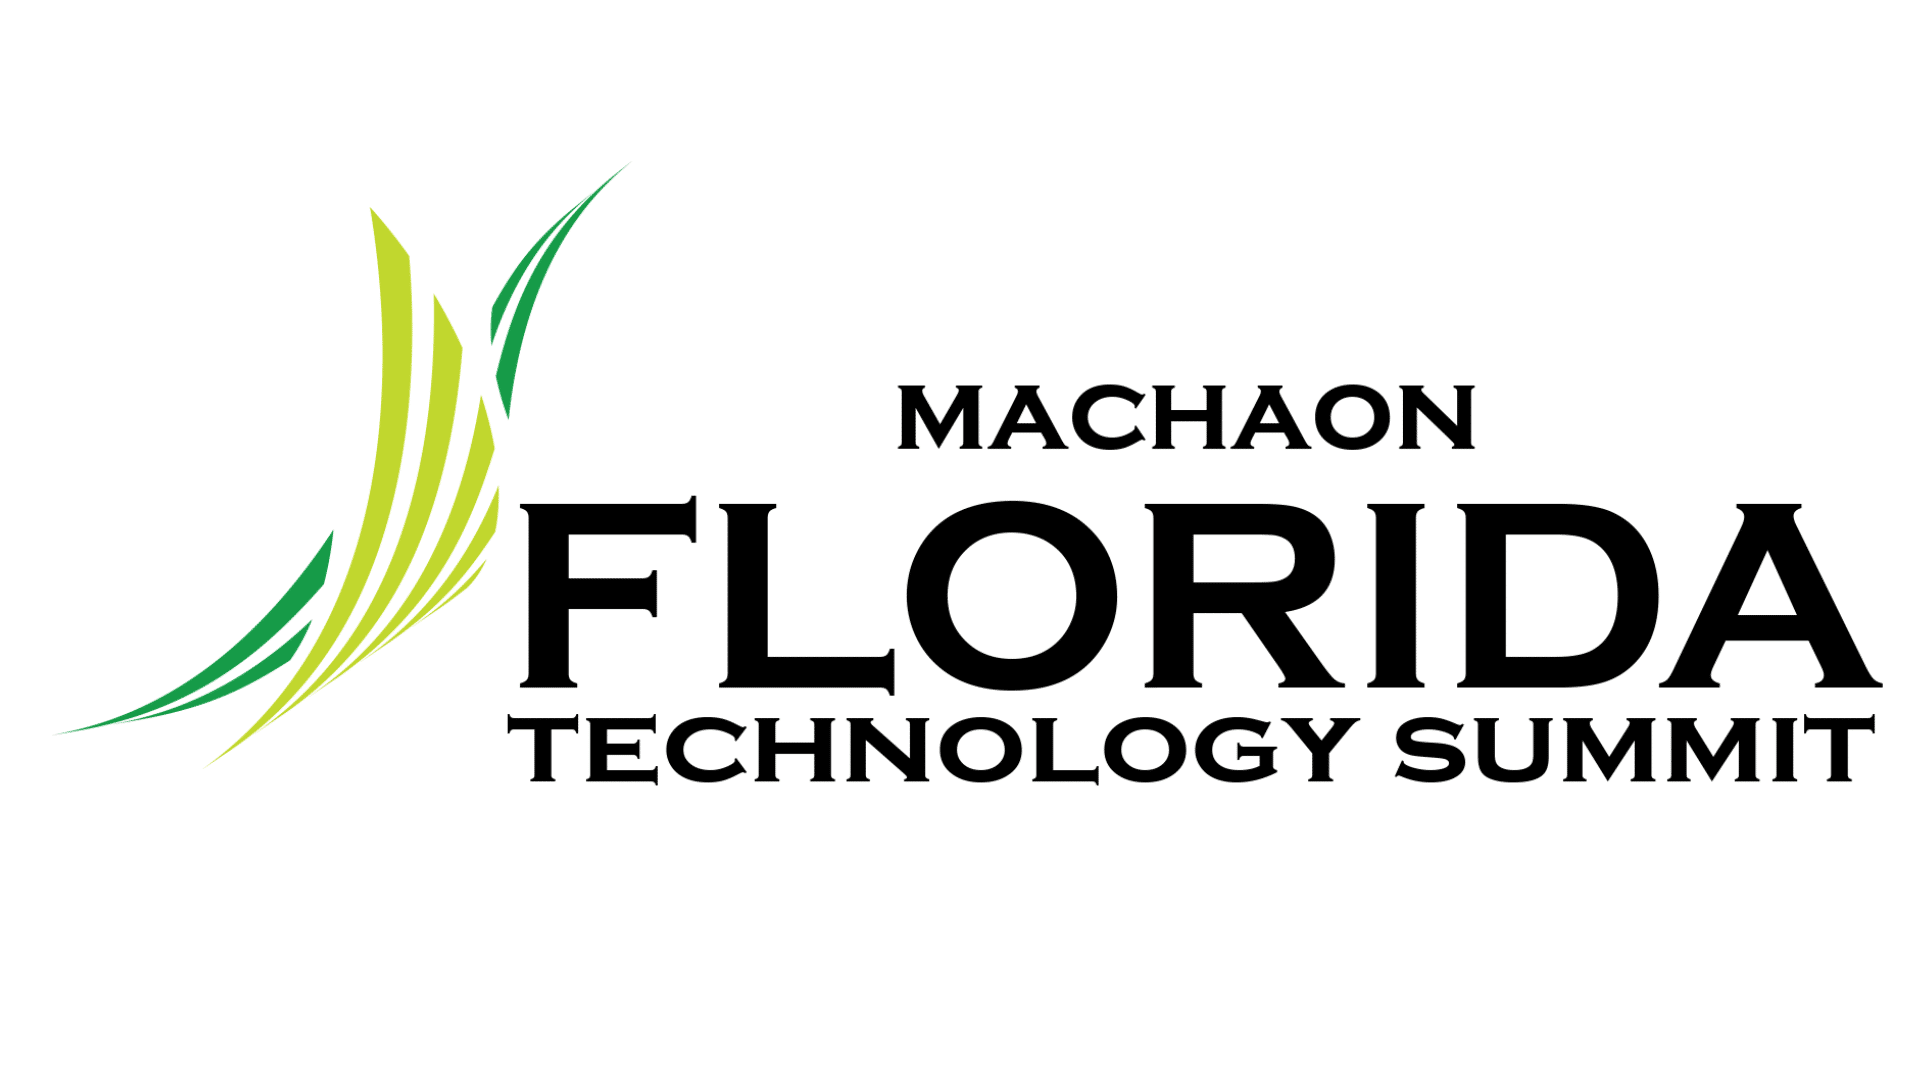 Florida Technology Summit